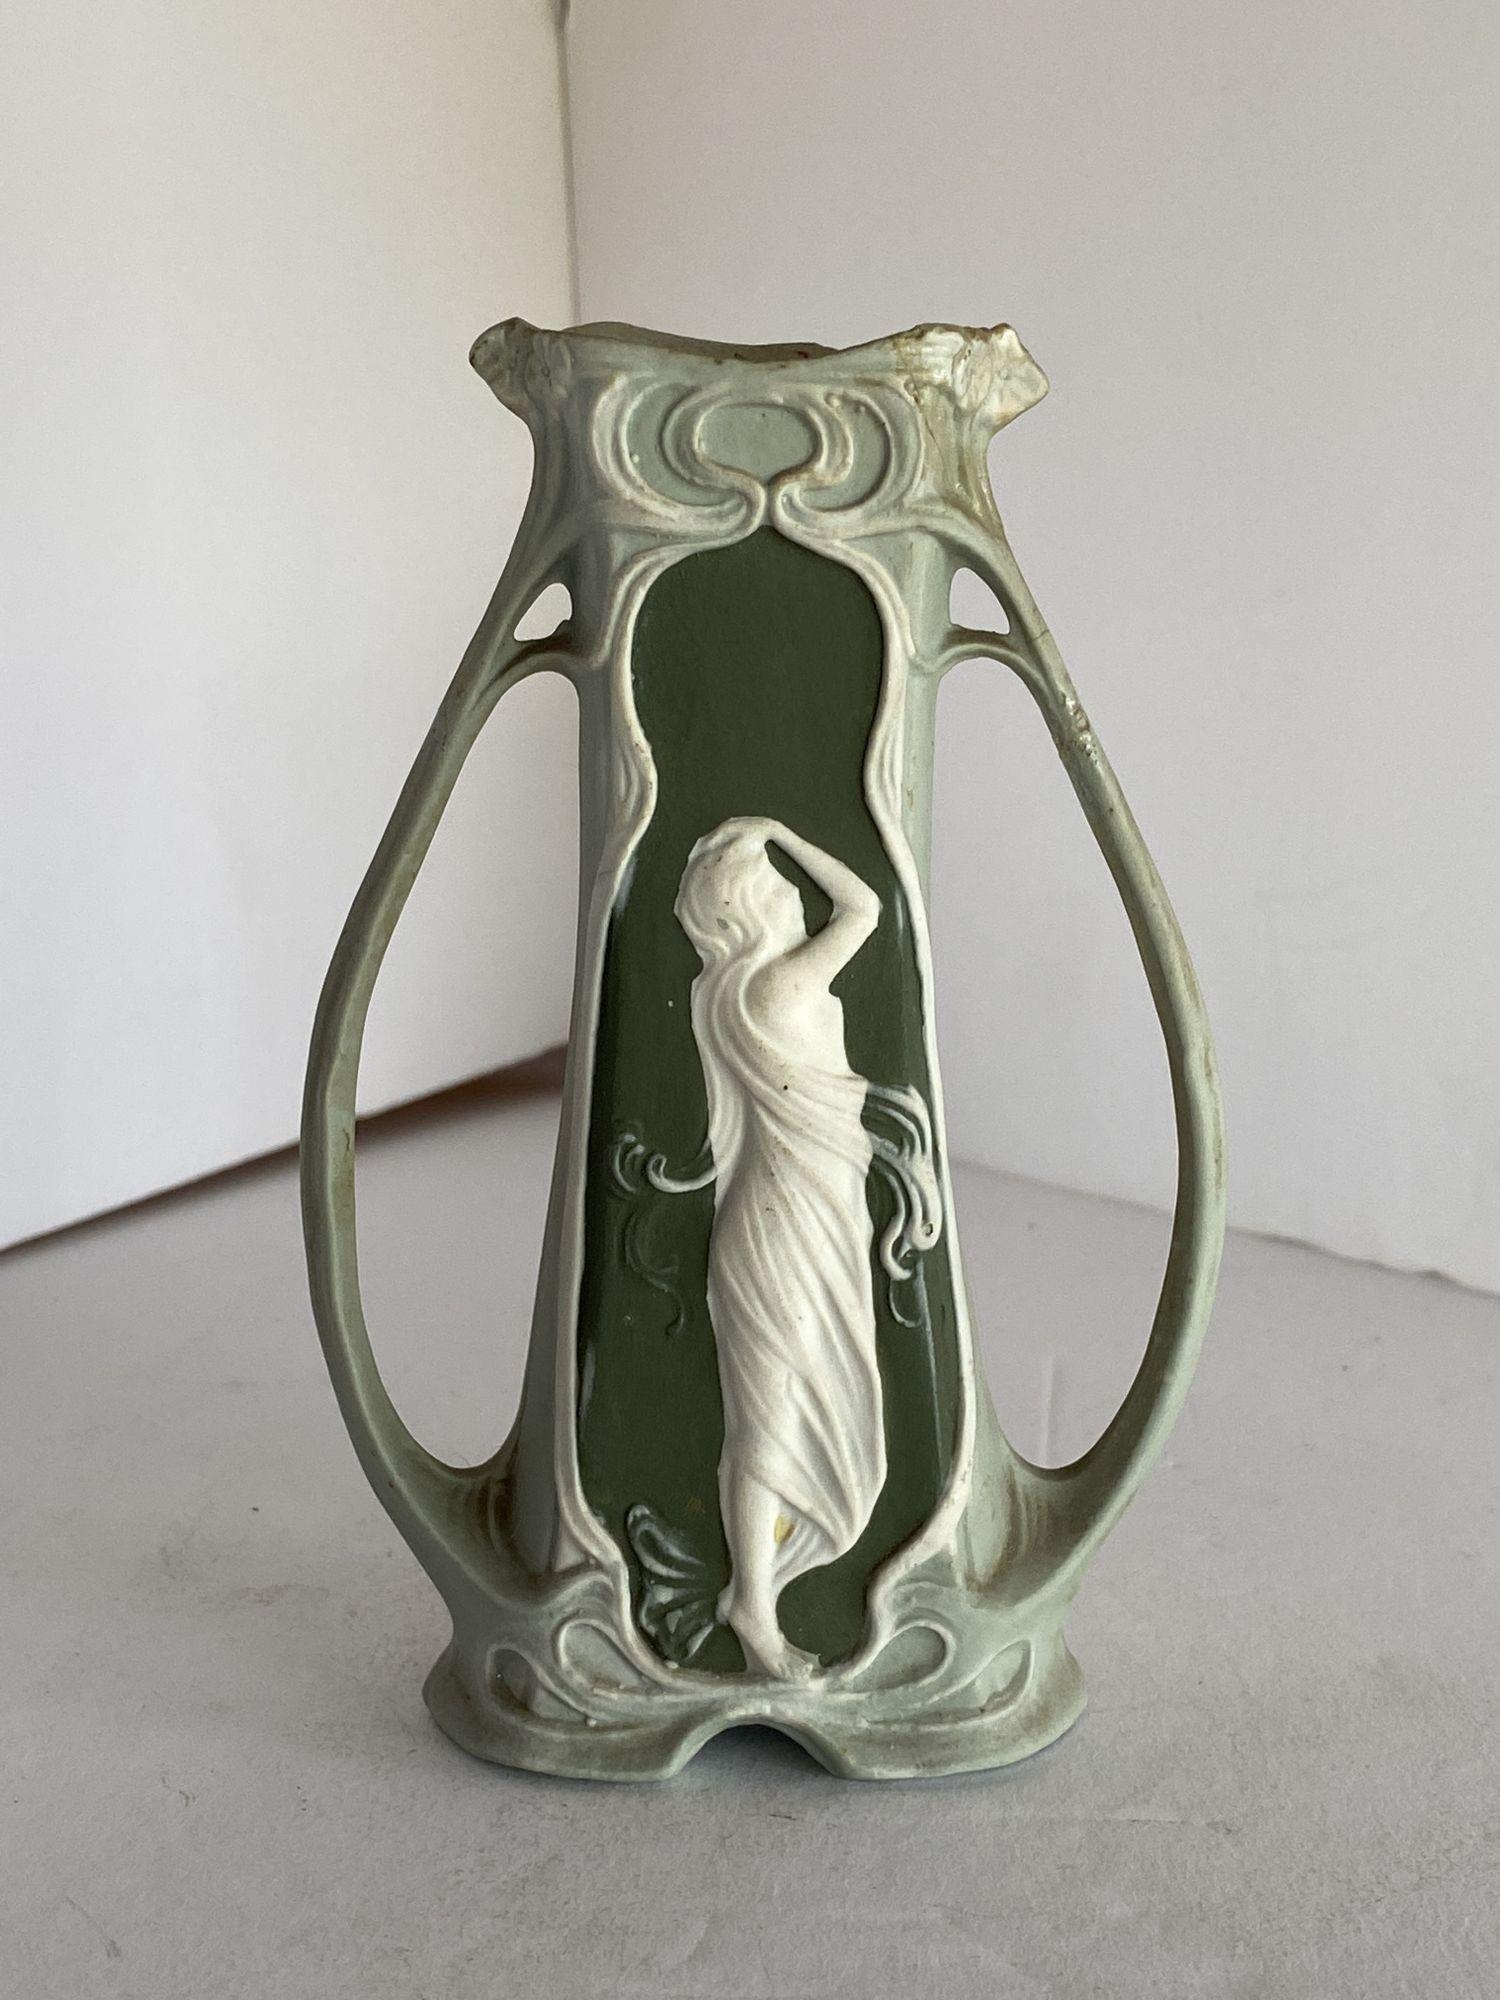 Vintage Schafer Vater German Bisque Green Jasperware Art Nouveau Maiden Bud Vase Jasperware bud vase.
 
Incisé avec le numéro 5786 sur le fond.